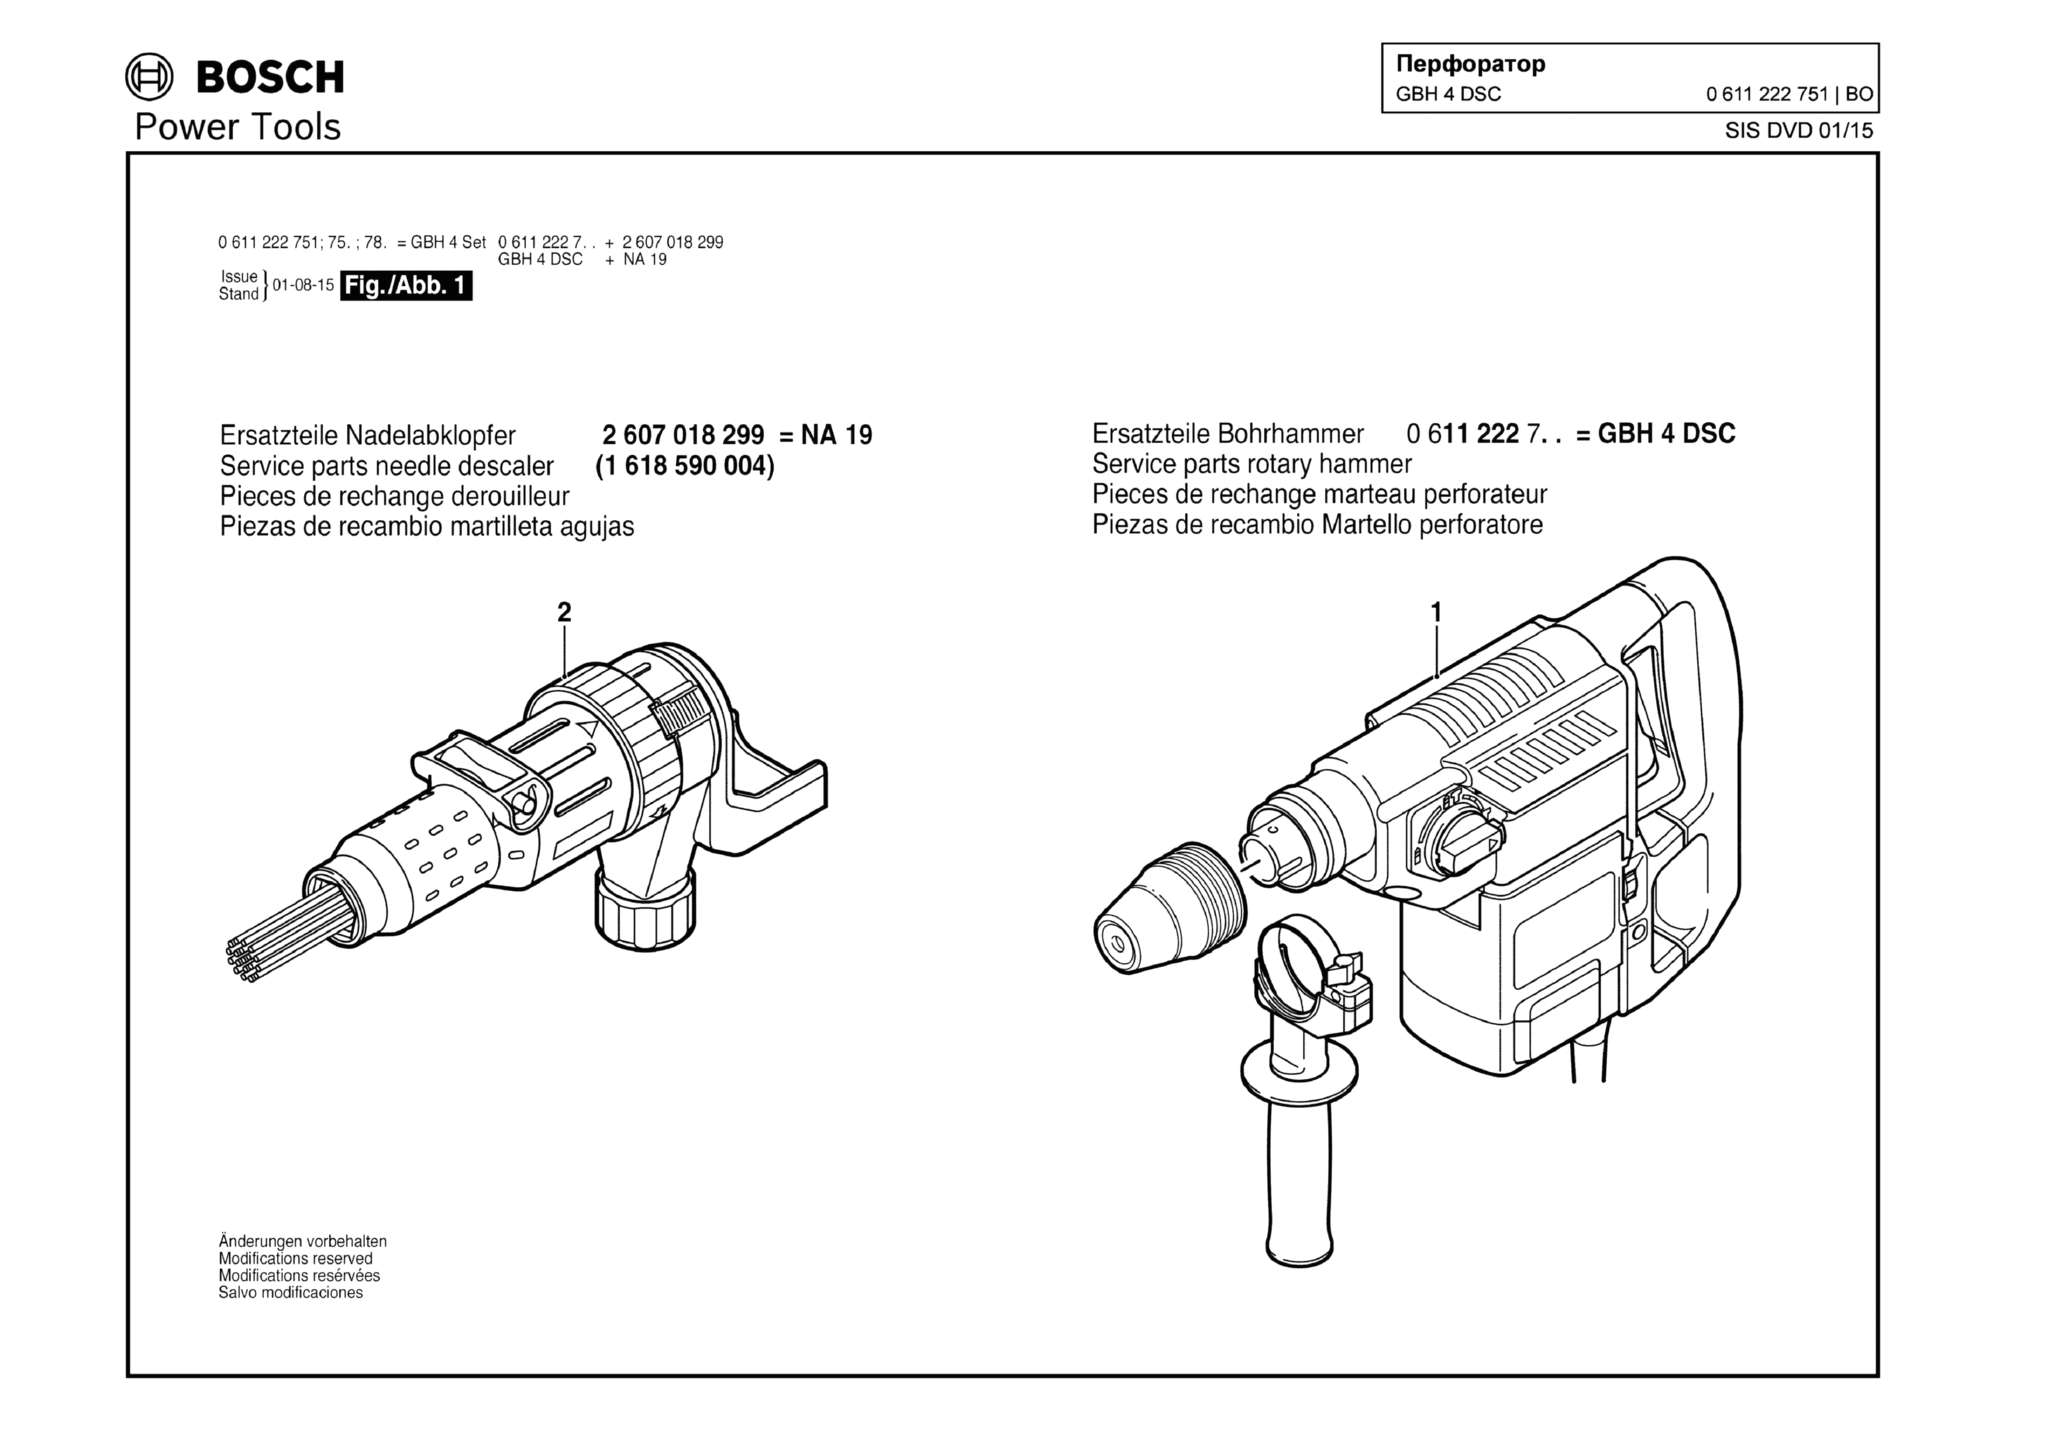 Запчасти, схема и деталировка Bosch GBH 4 DSC (ТИП 0611222751)